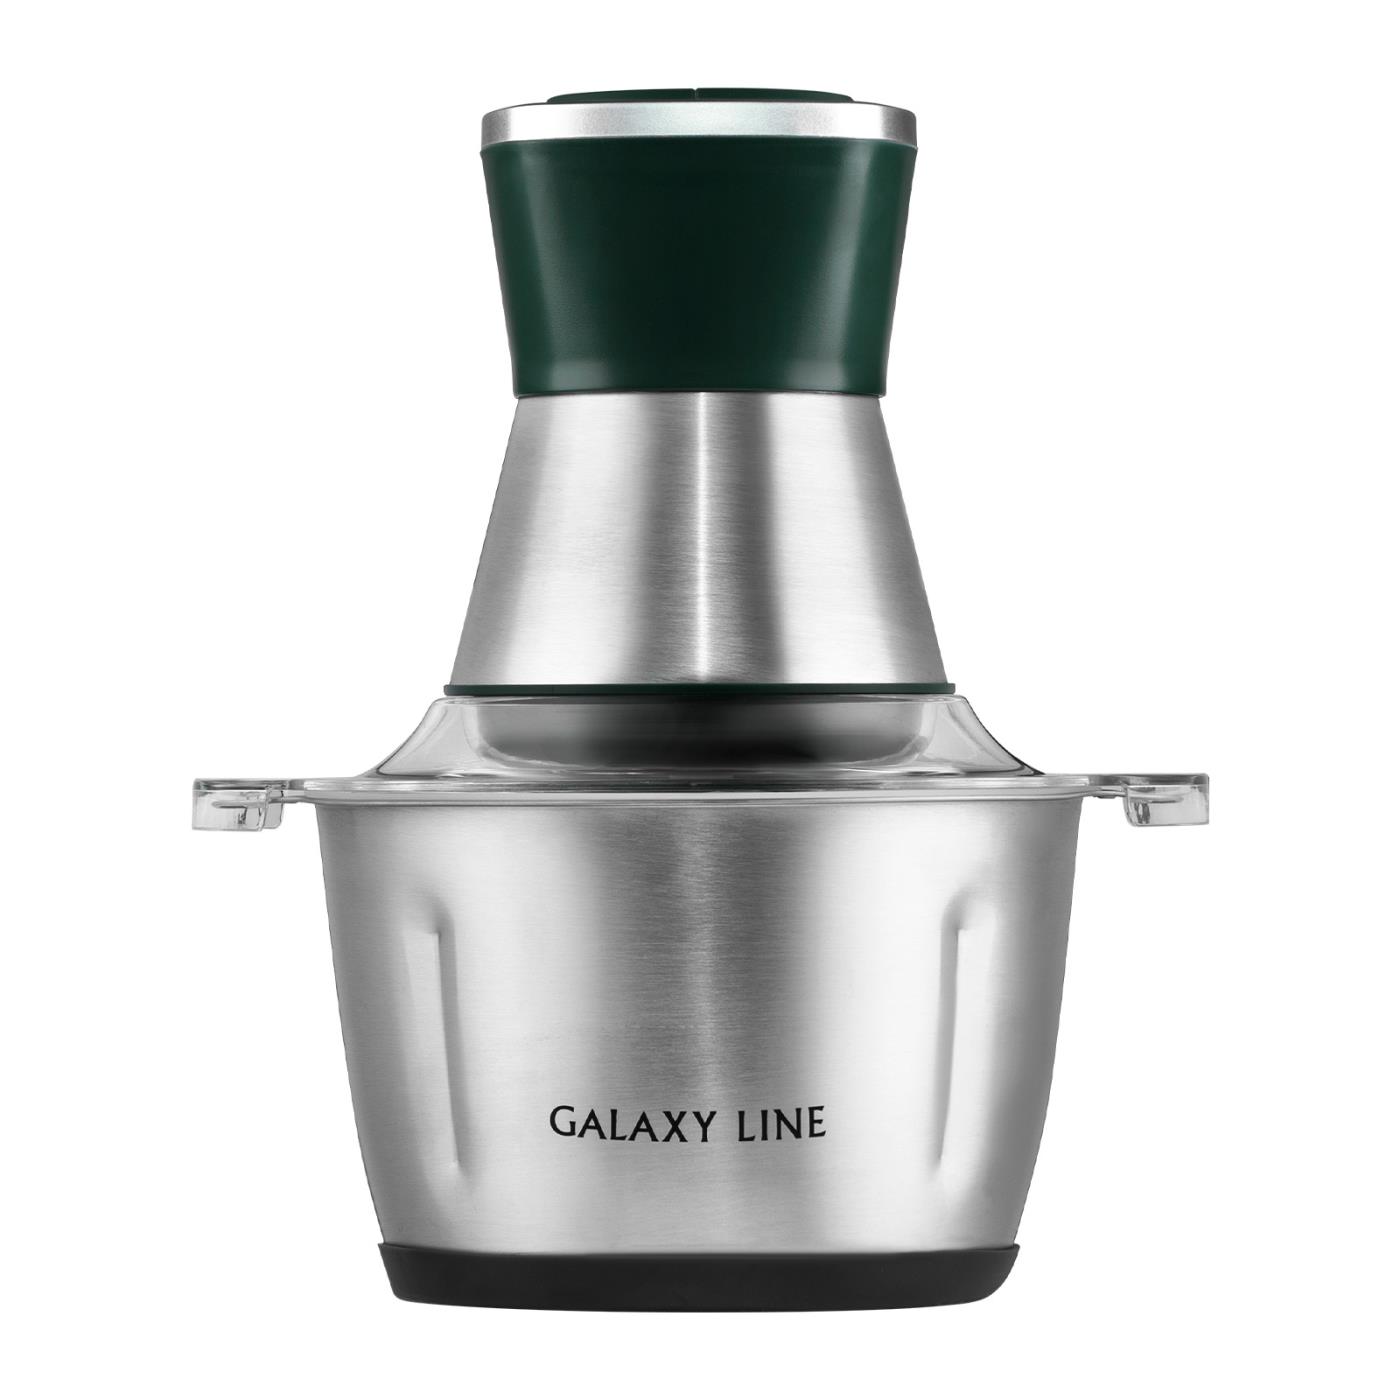 Измельчитель Galaxy LINE GL 2382